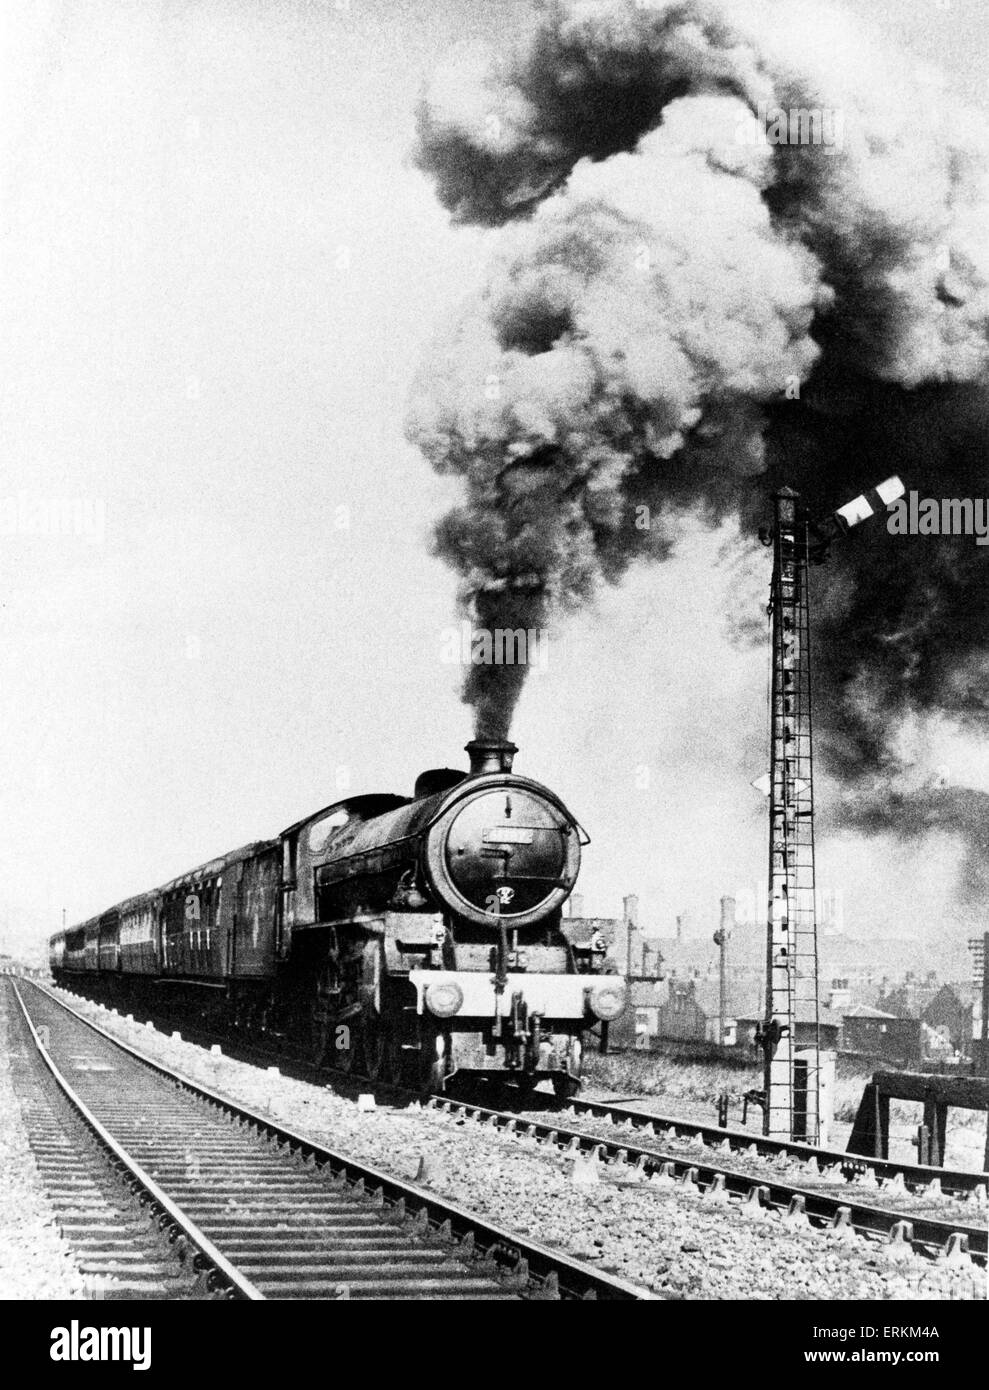 Copley Hill classe locomotiva a vapore B1 4-6-0 61387 numero di attacchi il 1-a-50 da Holbeck fino a Copley collina con un treno Leeds-Cleethorpes, 1951 Foto Stock